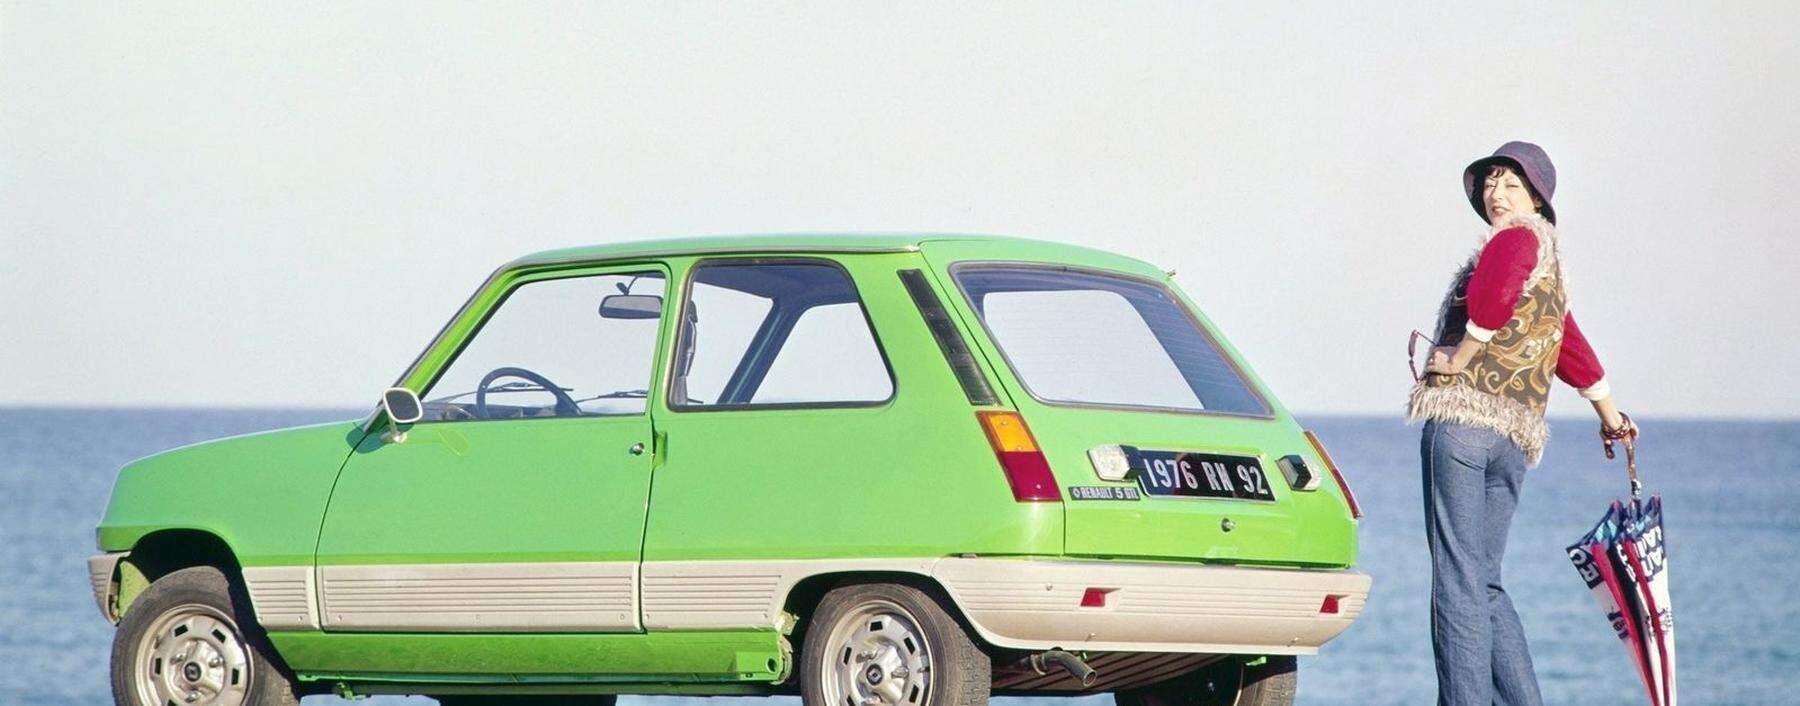 Schlicht schnuckelig, hochverehrt: der originale Renault 5, hier in erster Serie als feiner GTL von 1976. 